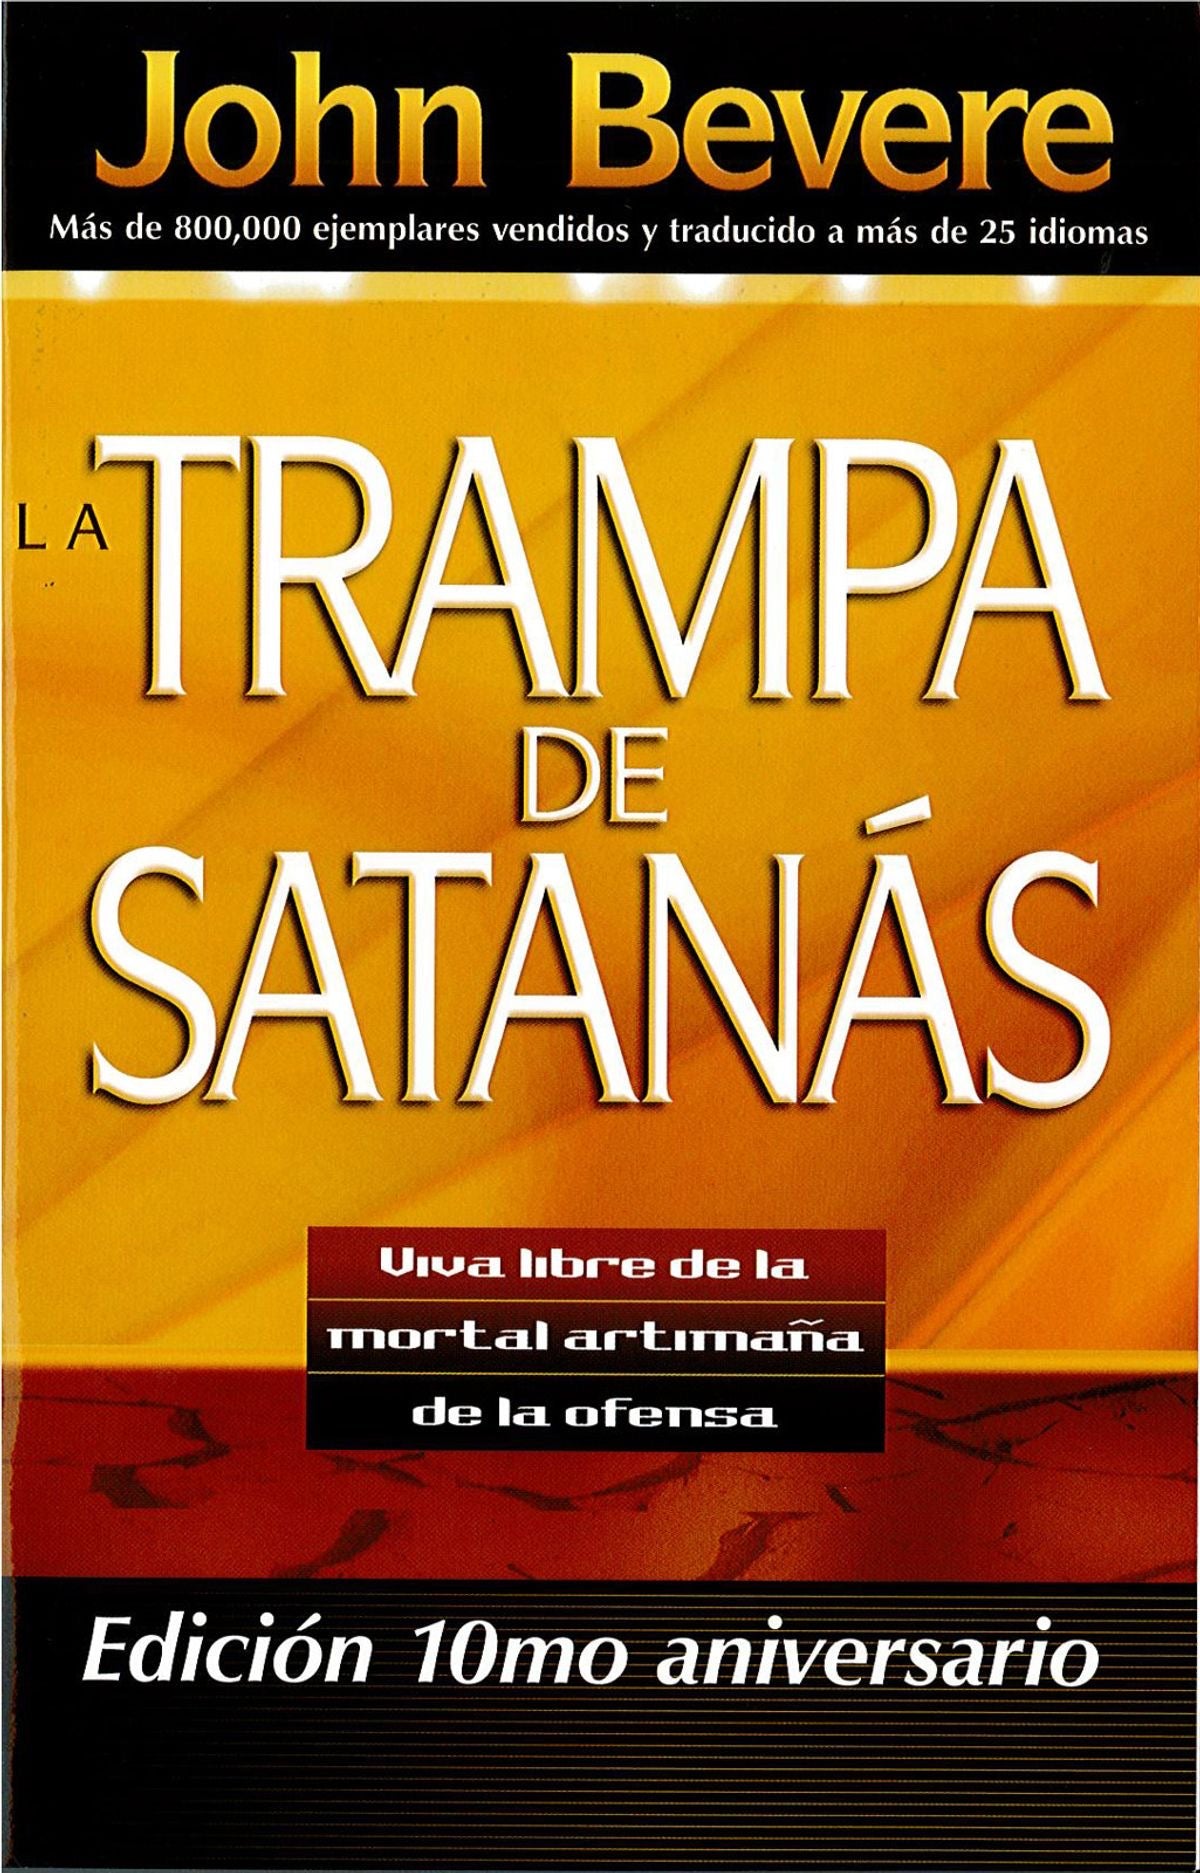 La trampa de satanas: Viva libre de la mortal artimaña de la ofensa